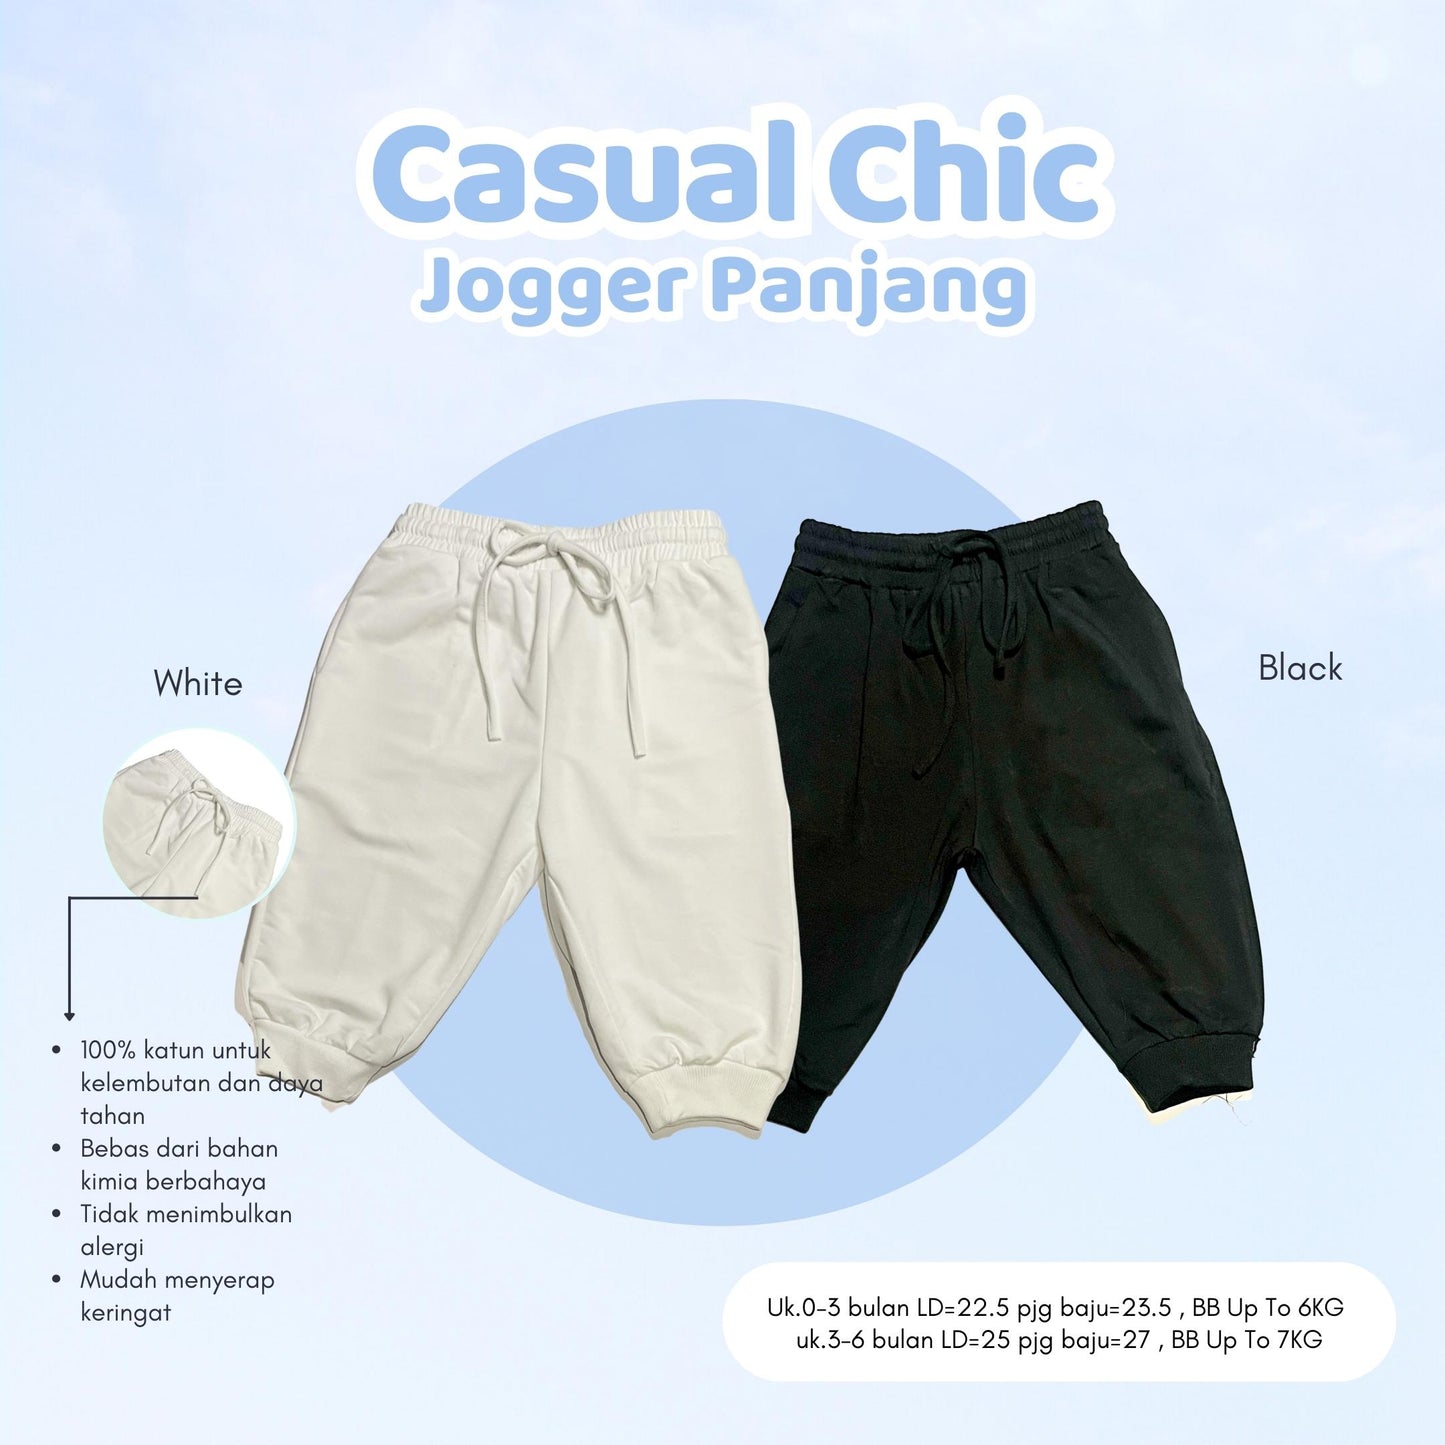 Jogger Panjang (Casual Chic)